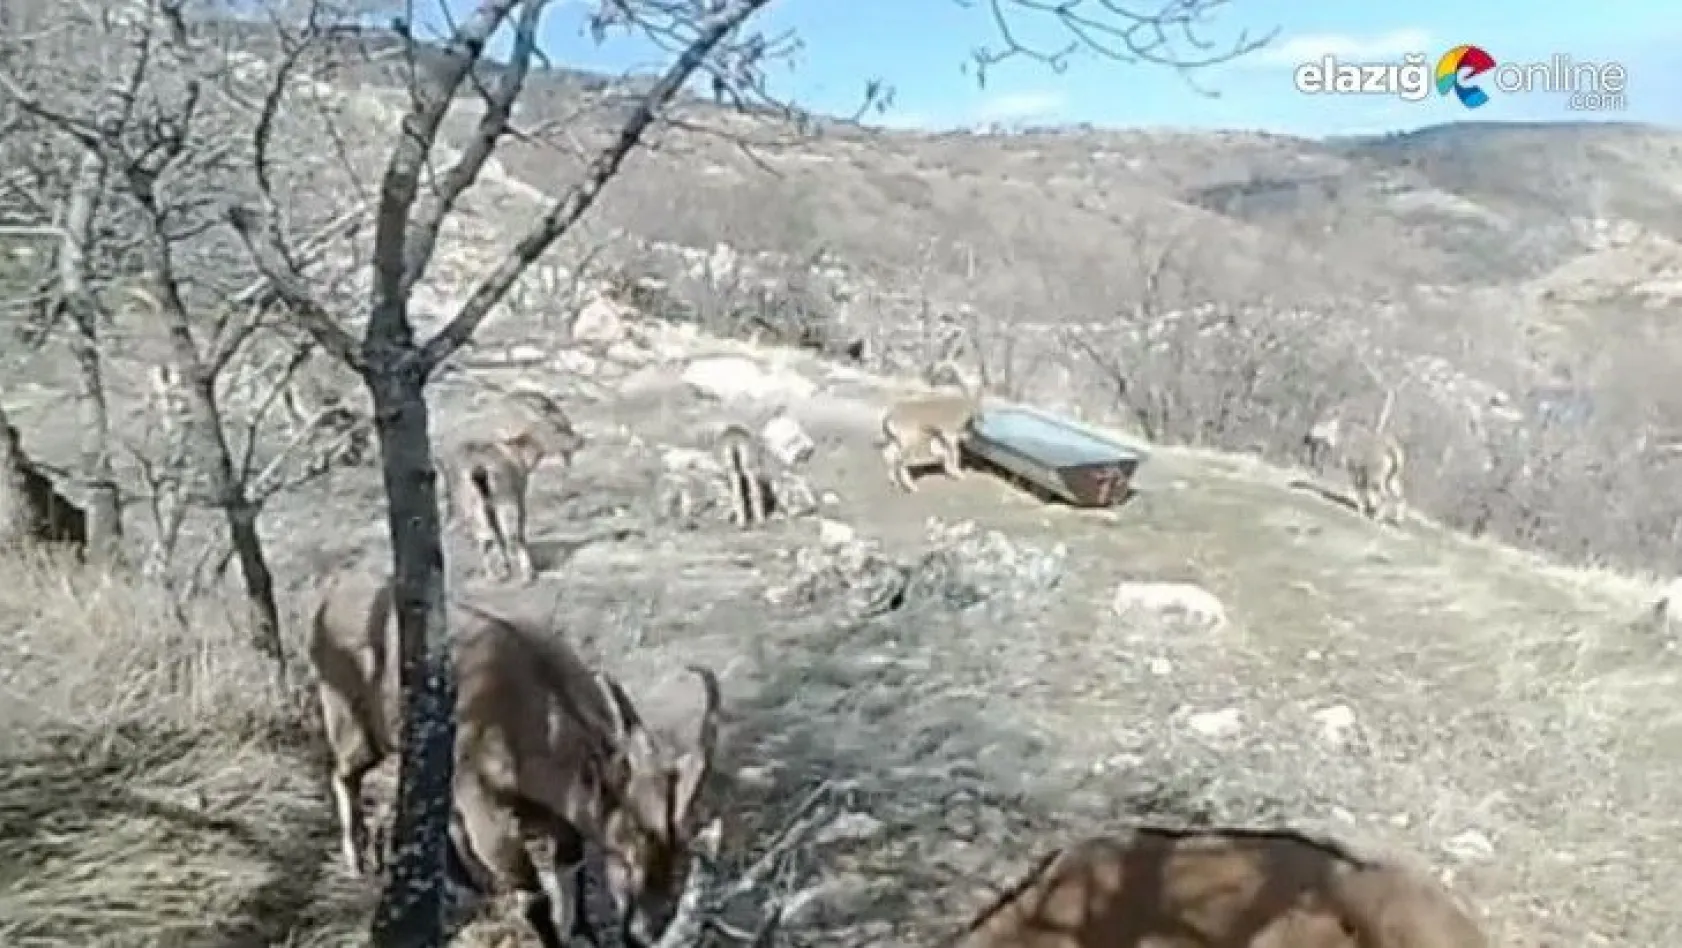 Su ve yiyecek ihtiyacını karşılayan dağ keçileri, fotokapanla görüntülendi